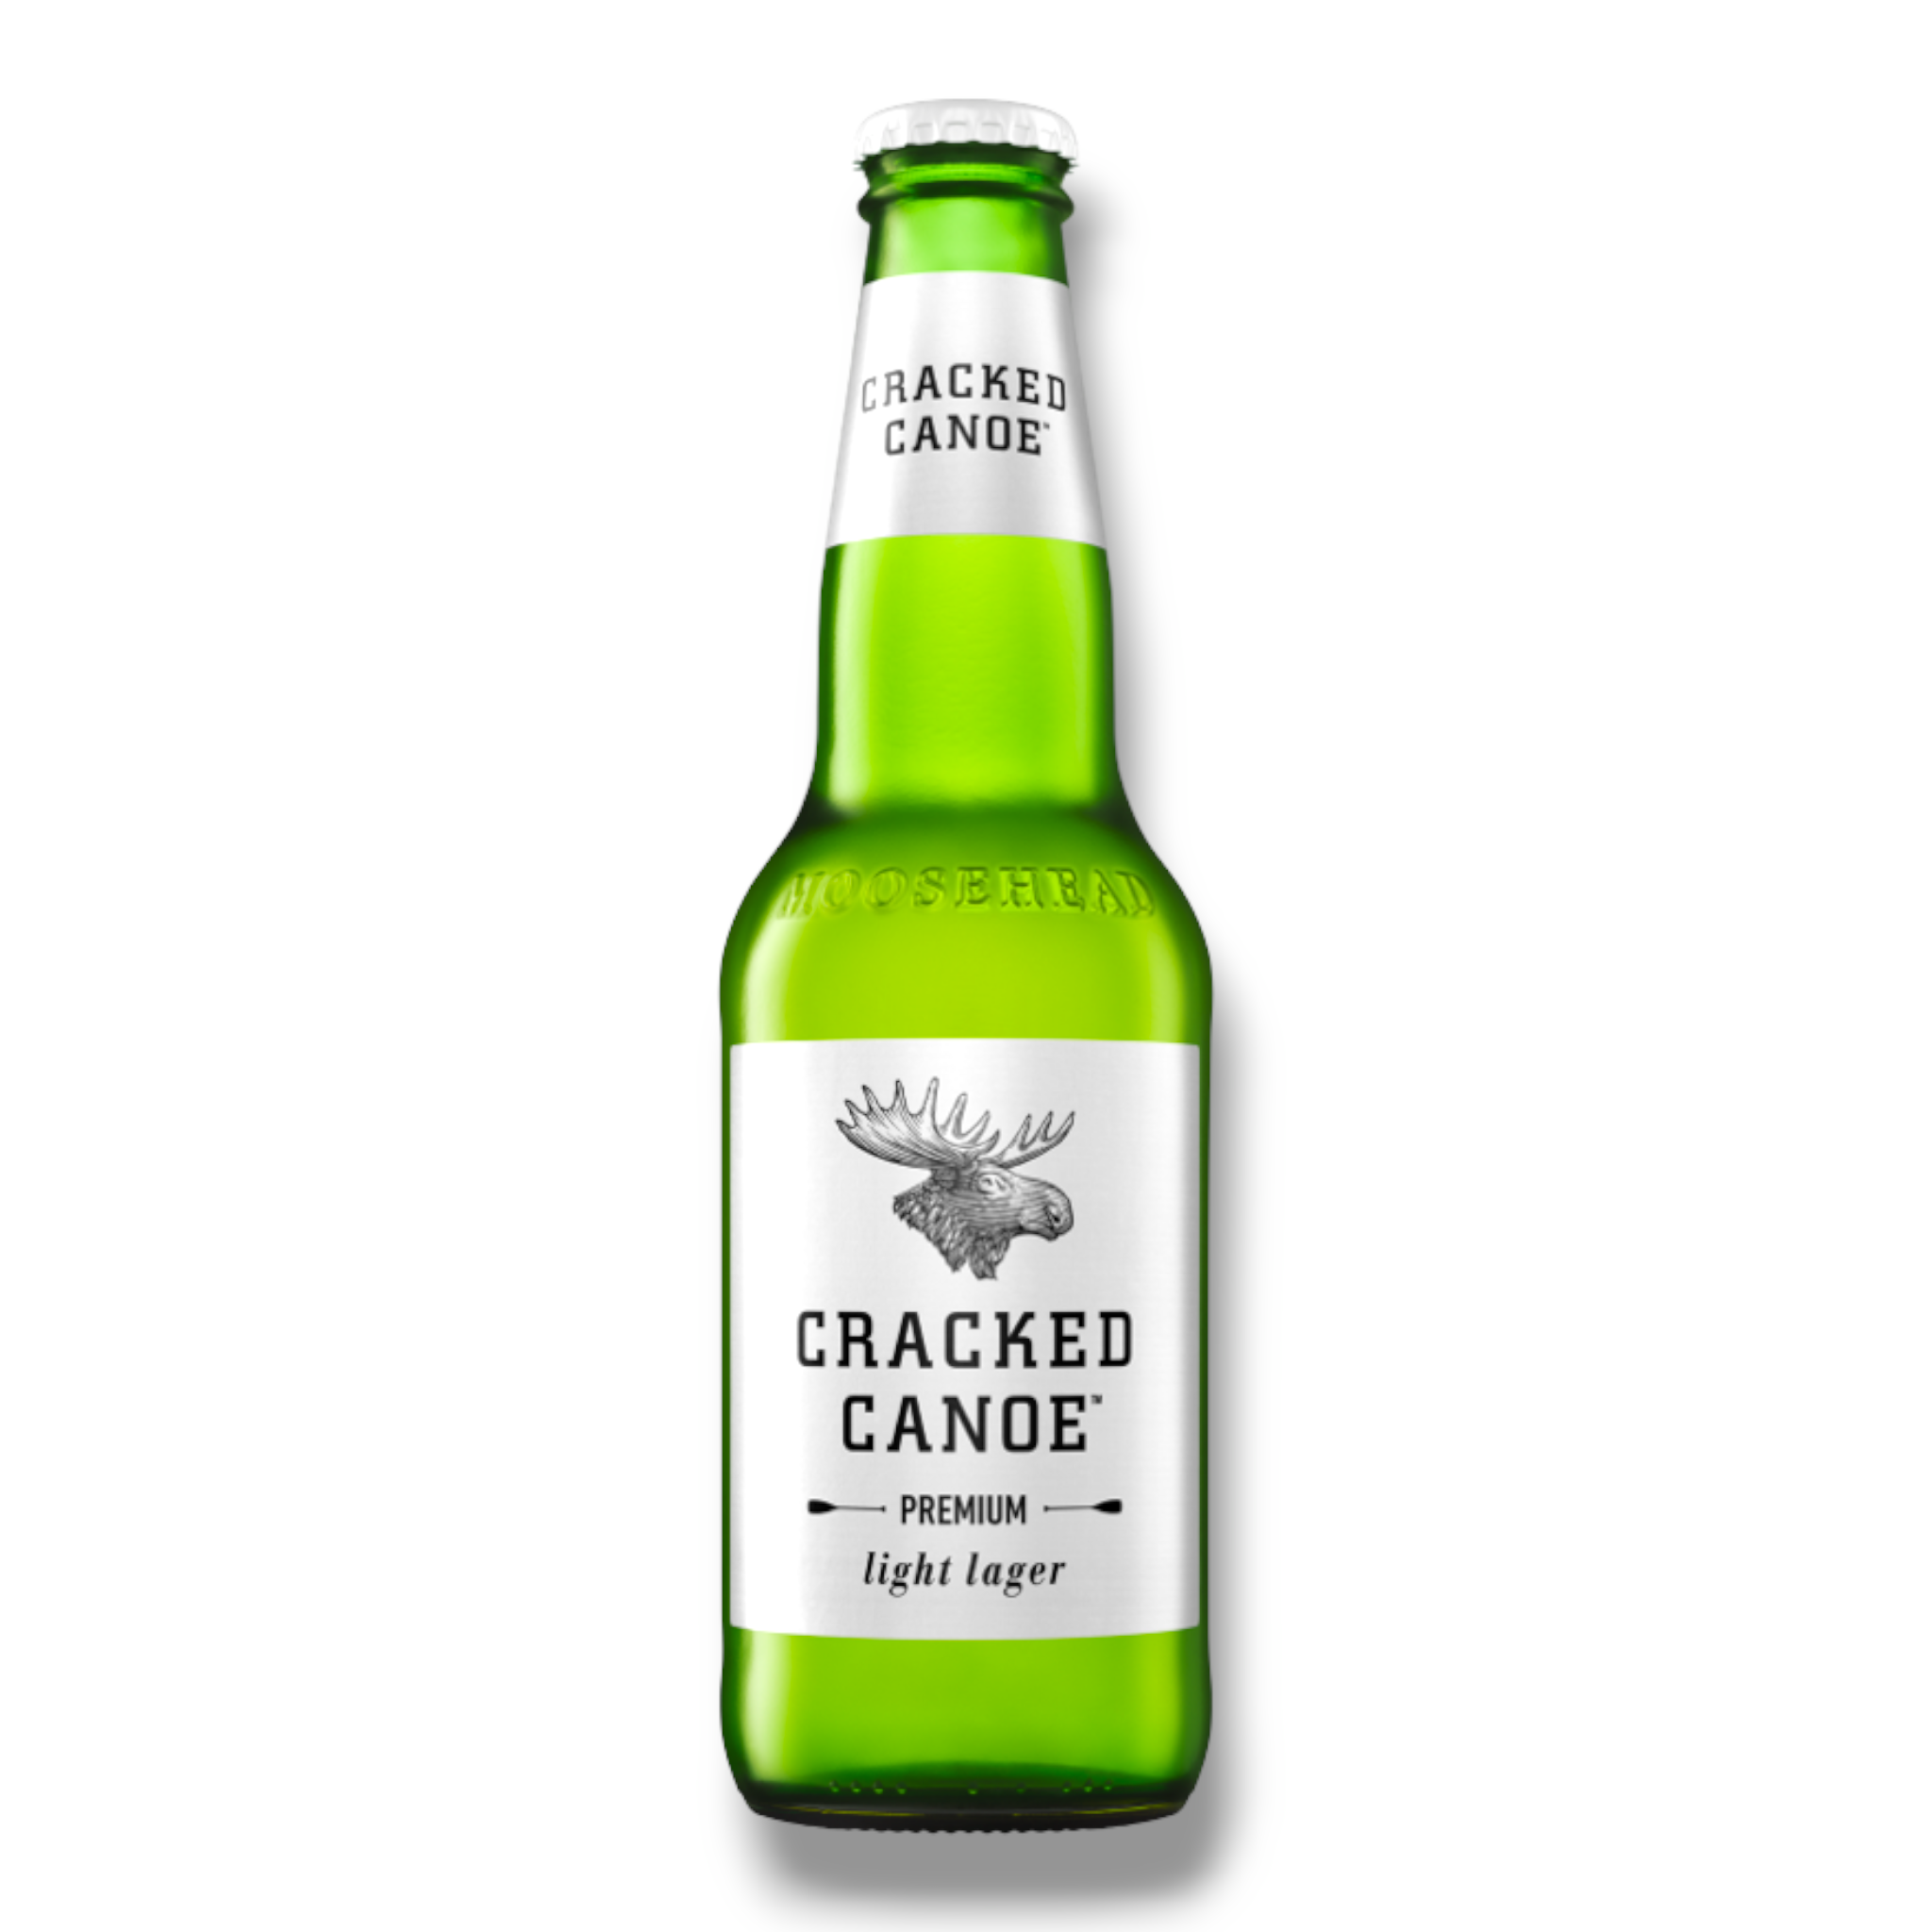 Moosehead Cracked Canoe Premium light Lager 341ml - Kalorienreduziertes Bier aus Kanada mit 3,5% Vol.